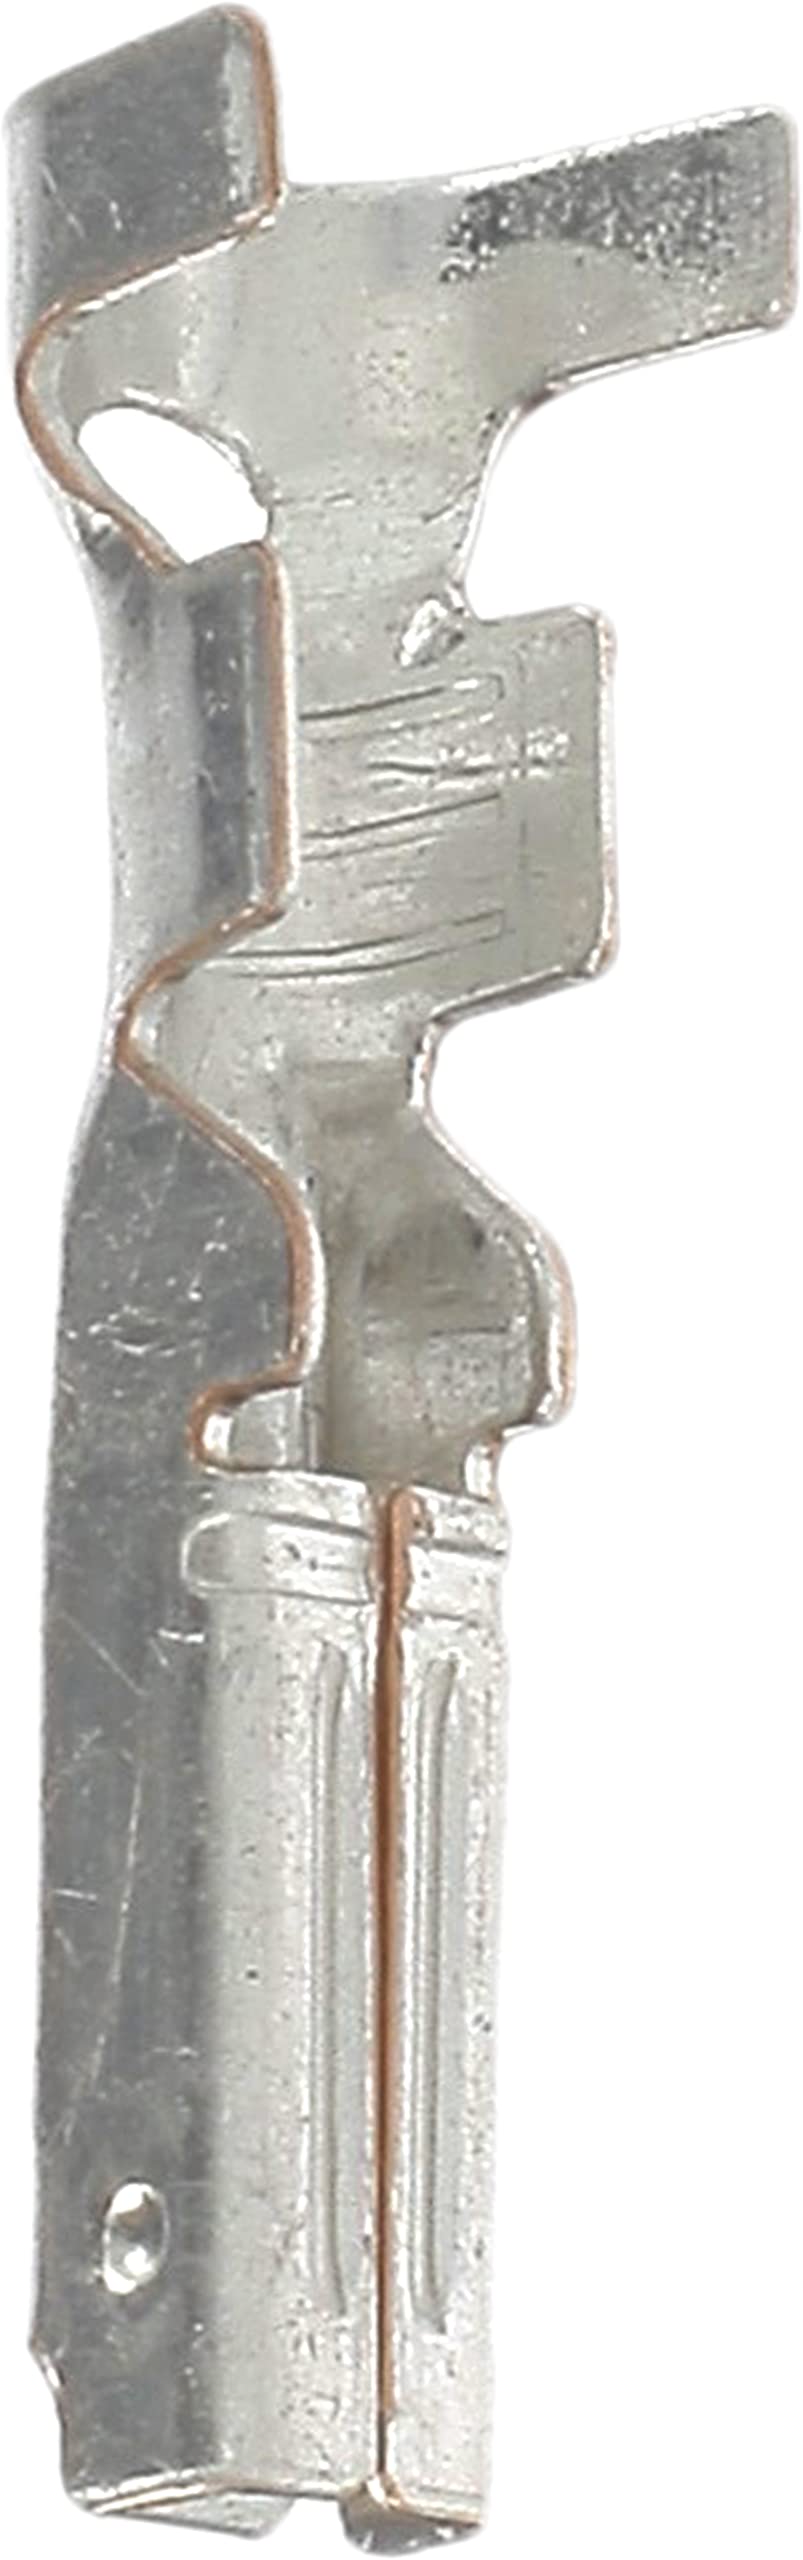 Restagraf Kabelschuh weiblich für Wasserdichten Anschluss, Blister, 1,5 mm x 0,8 mm, 1 bis 1,5 mm², 10 Stück von Restagraf